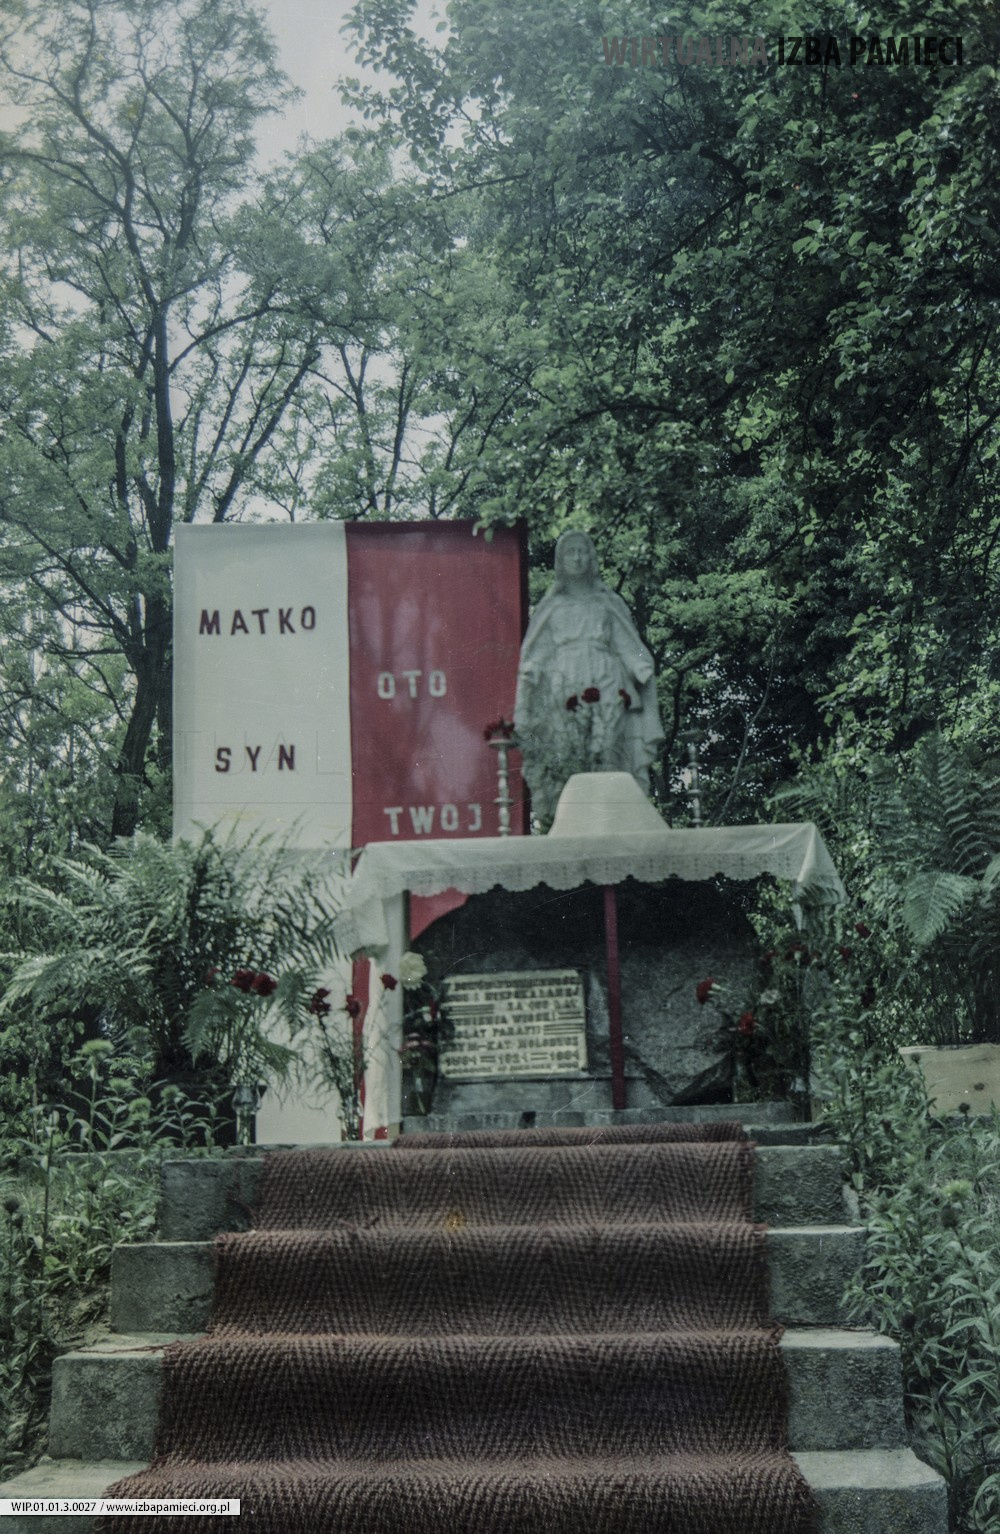 1985. Kapliczka Matki Bożej w Mołodyczu